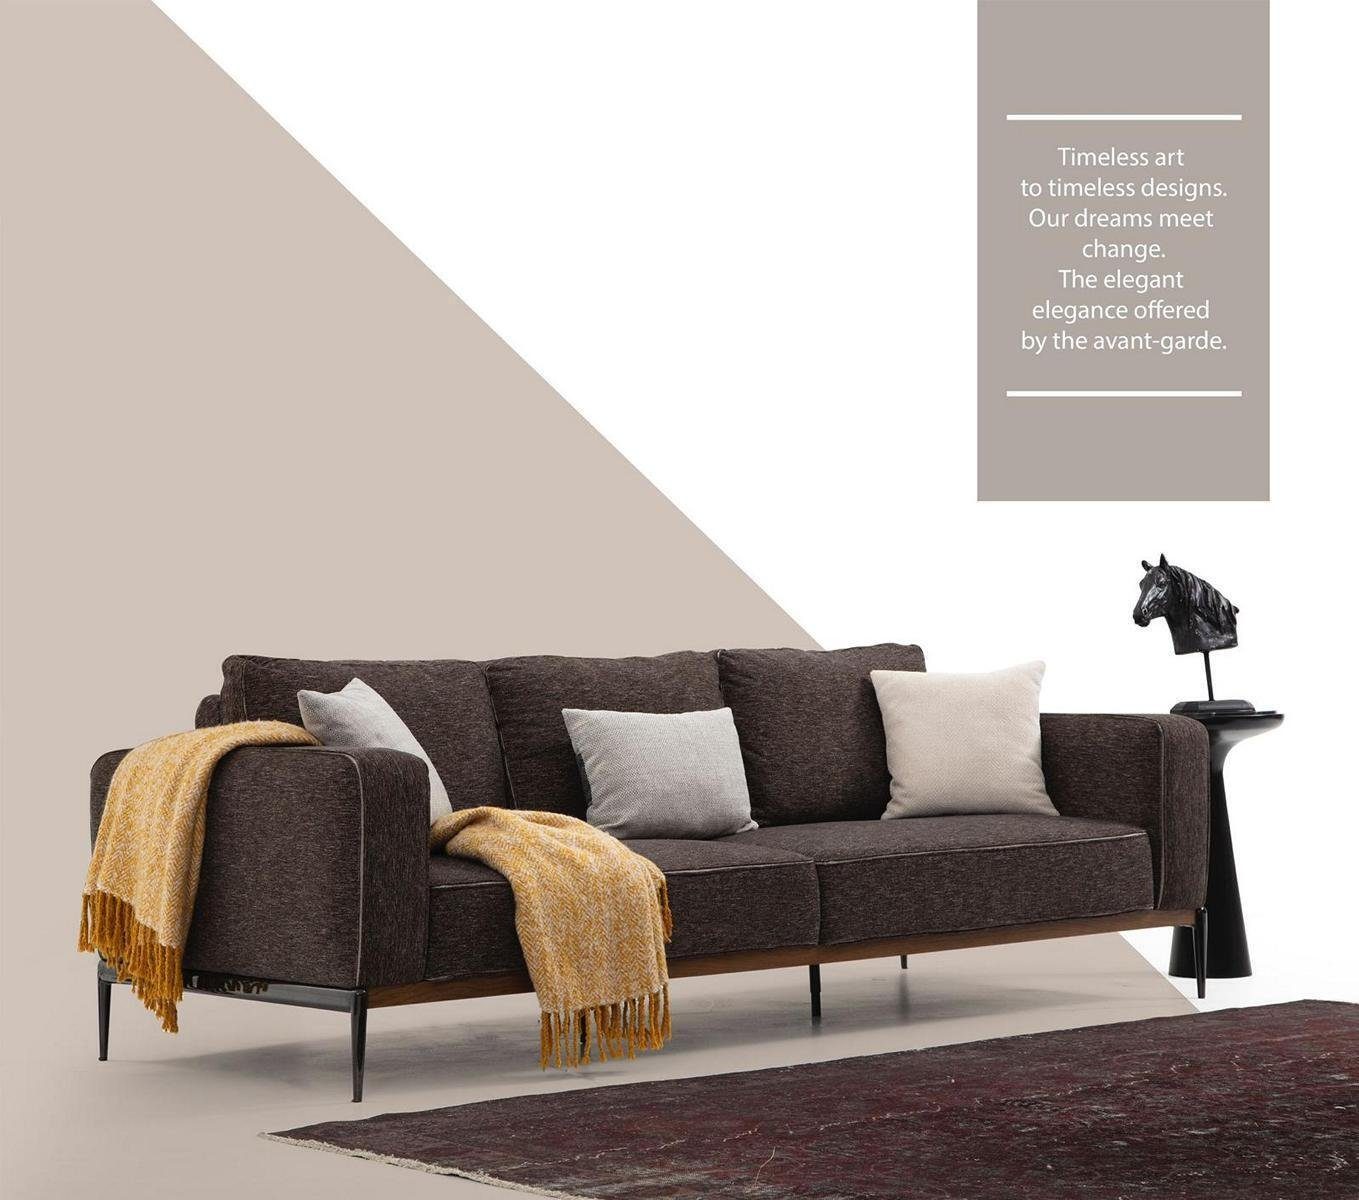 JVmoebel 3-Sitzer Dreisitzer Sofa 3 Sitzer Stoff Modern Sofas Design Wohnzimmer Grau, 1 Teile, Made in Europa | Einzelsofas